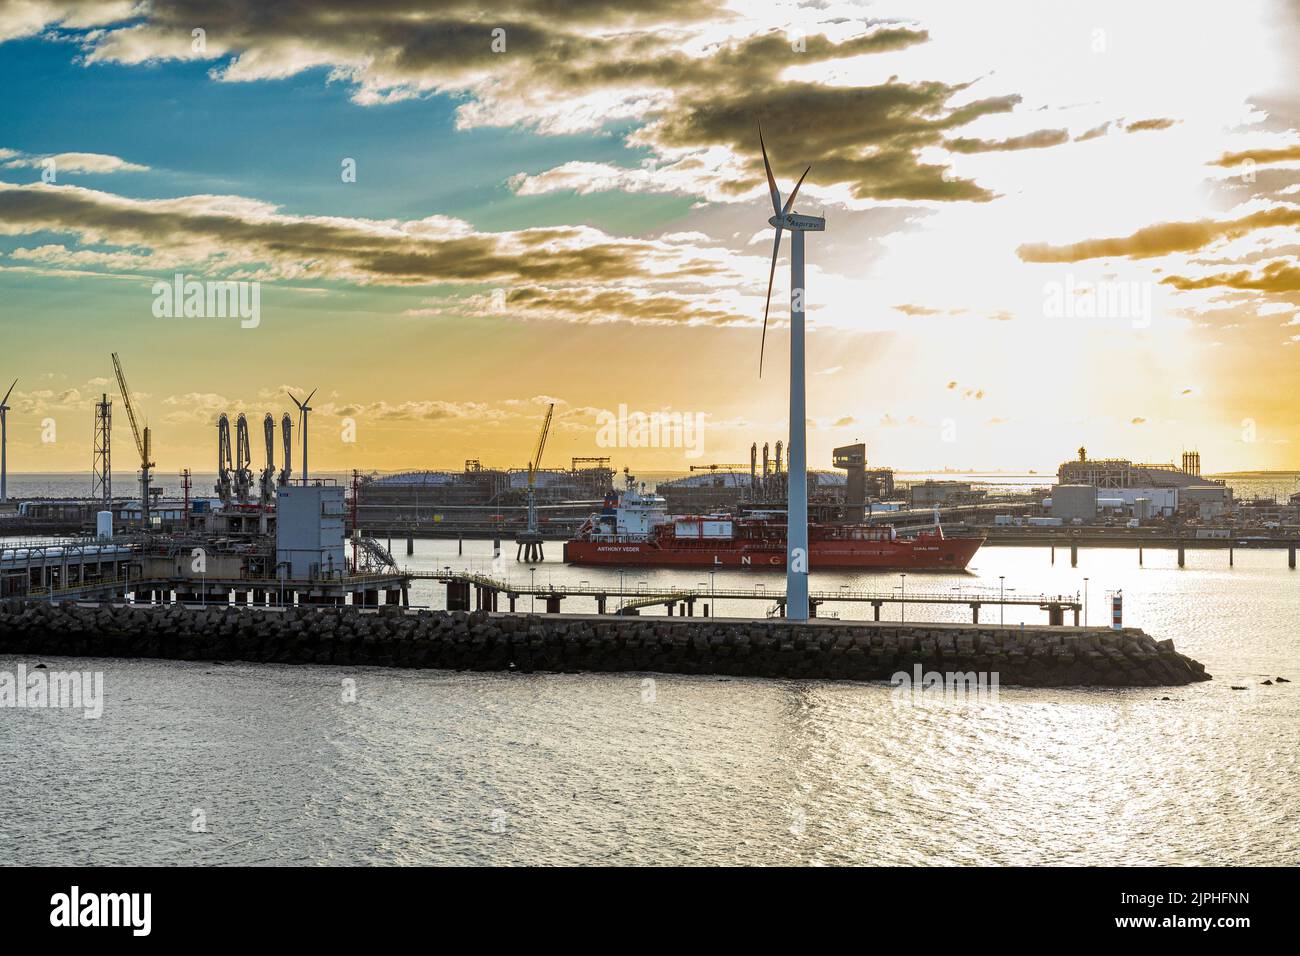 Amanecer en el puerto de Zeebrugge, Bélgica Foto de stock